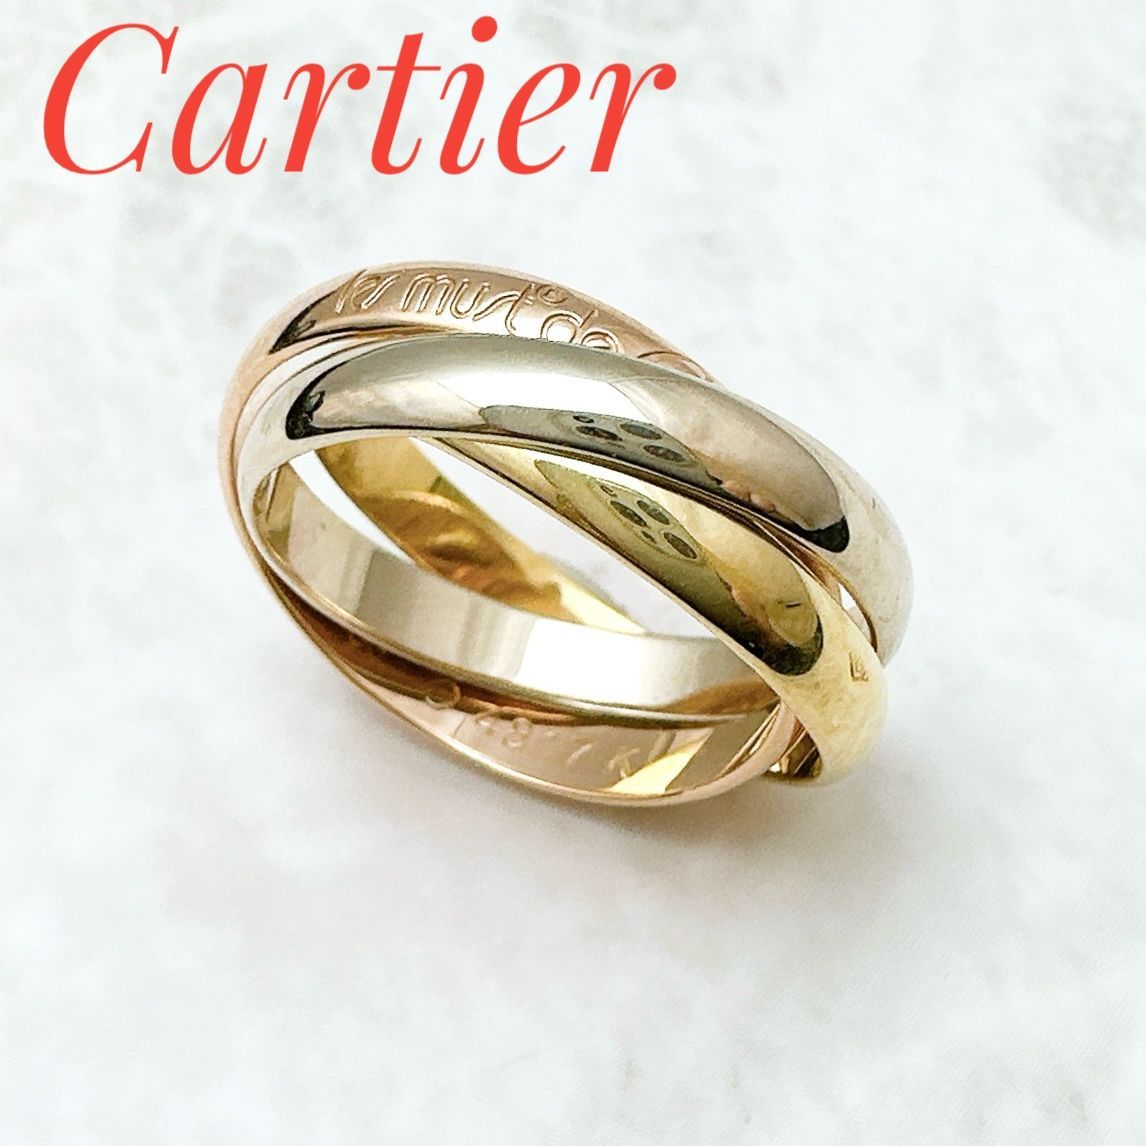 Cartier トリニティ クラシックモデル リング 53 約13号6万円可能でしょうか